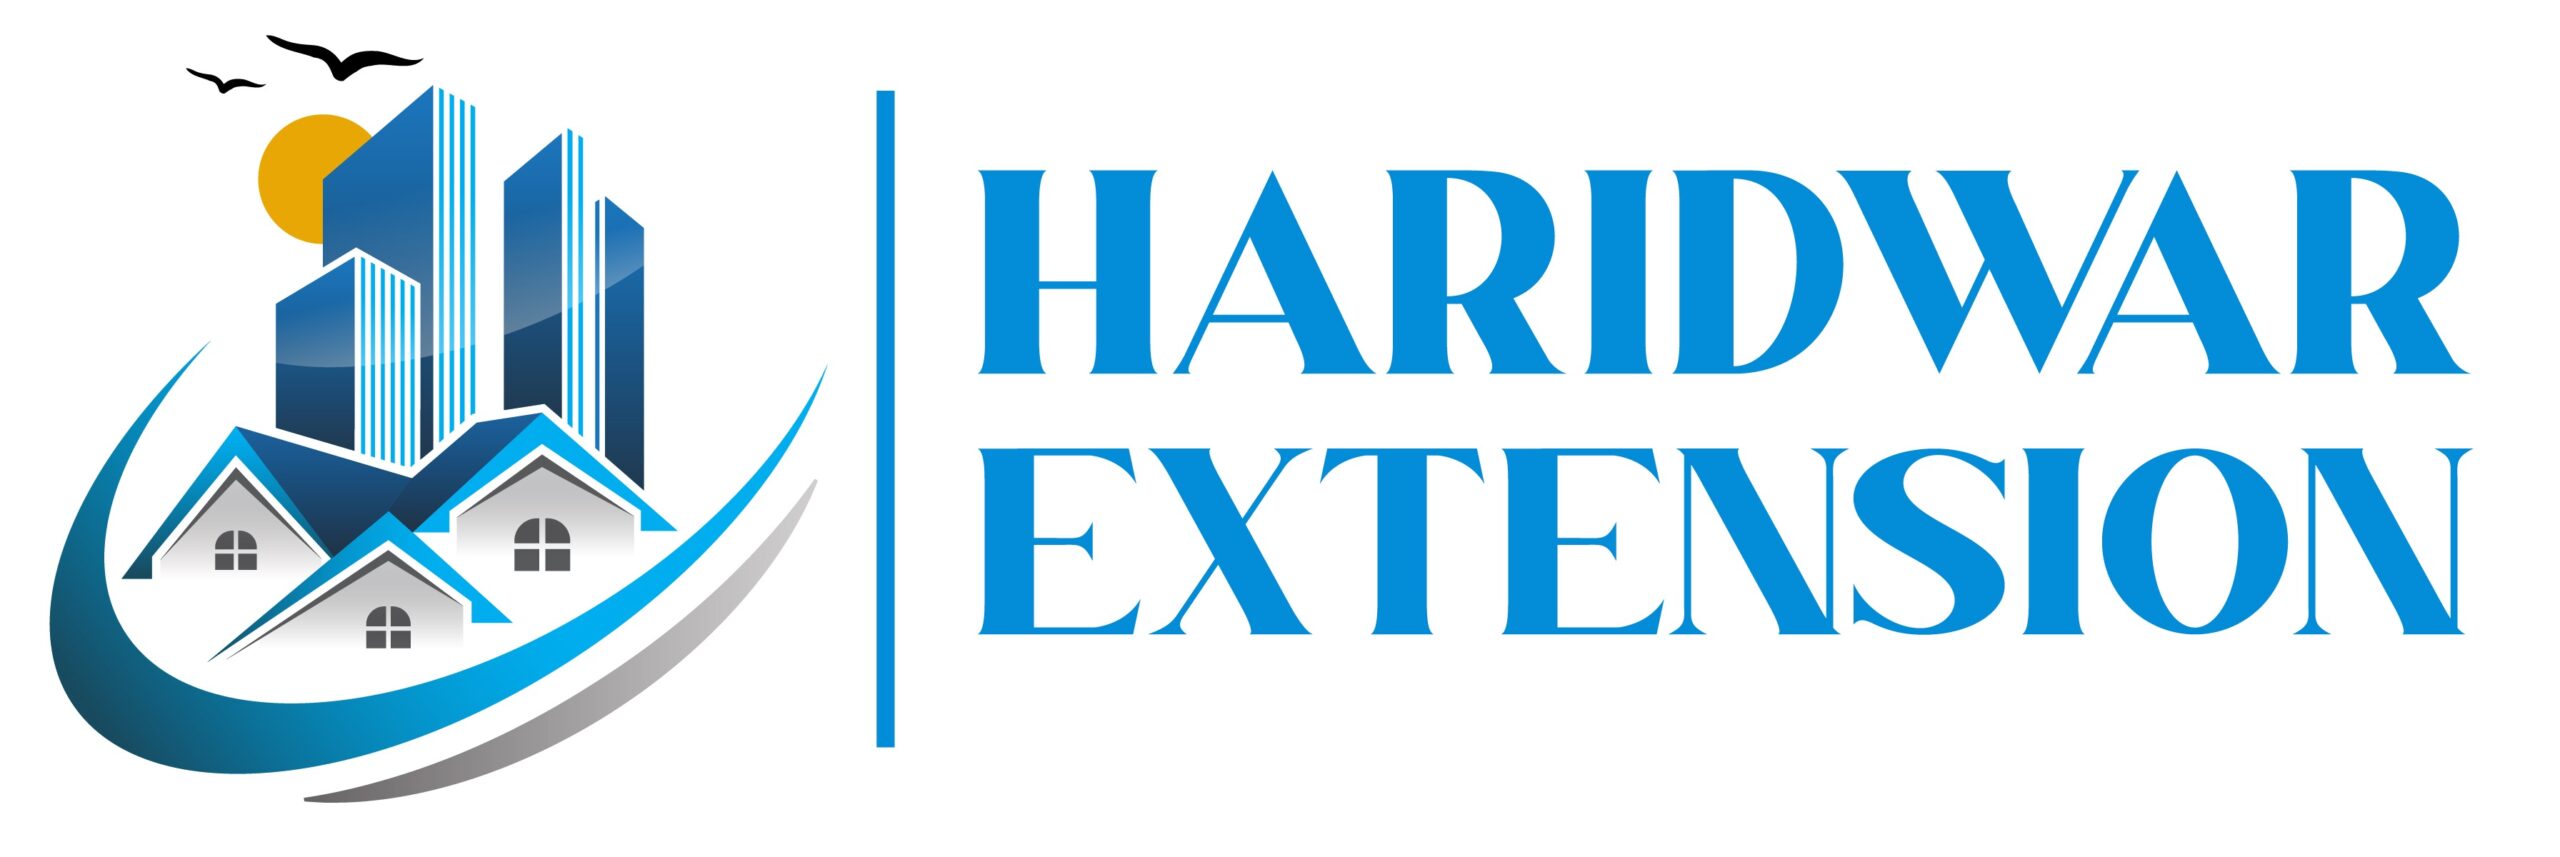 Haridwar Extension - Properties in Haridwar